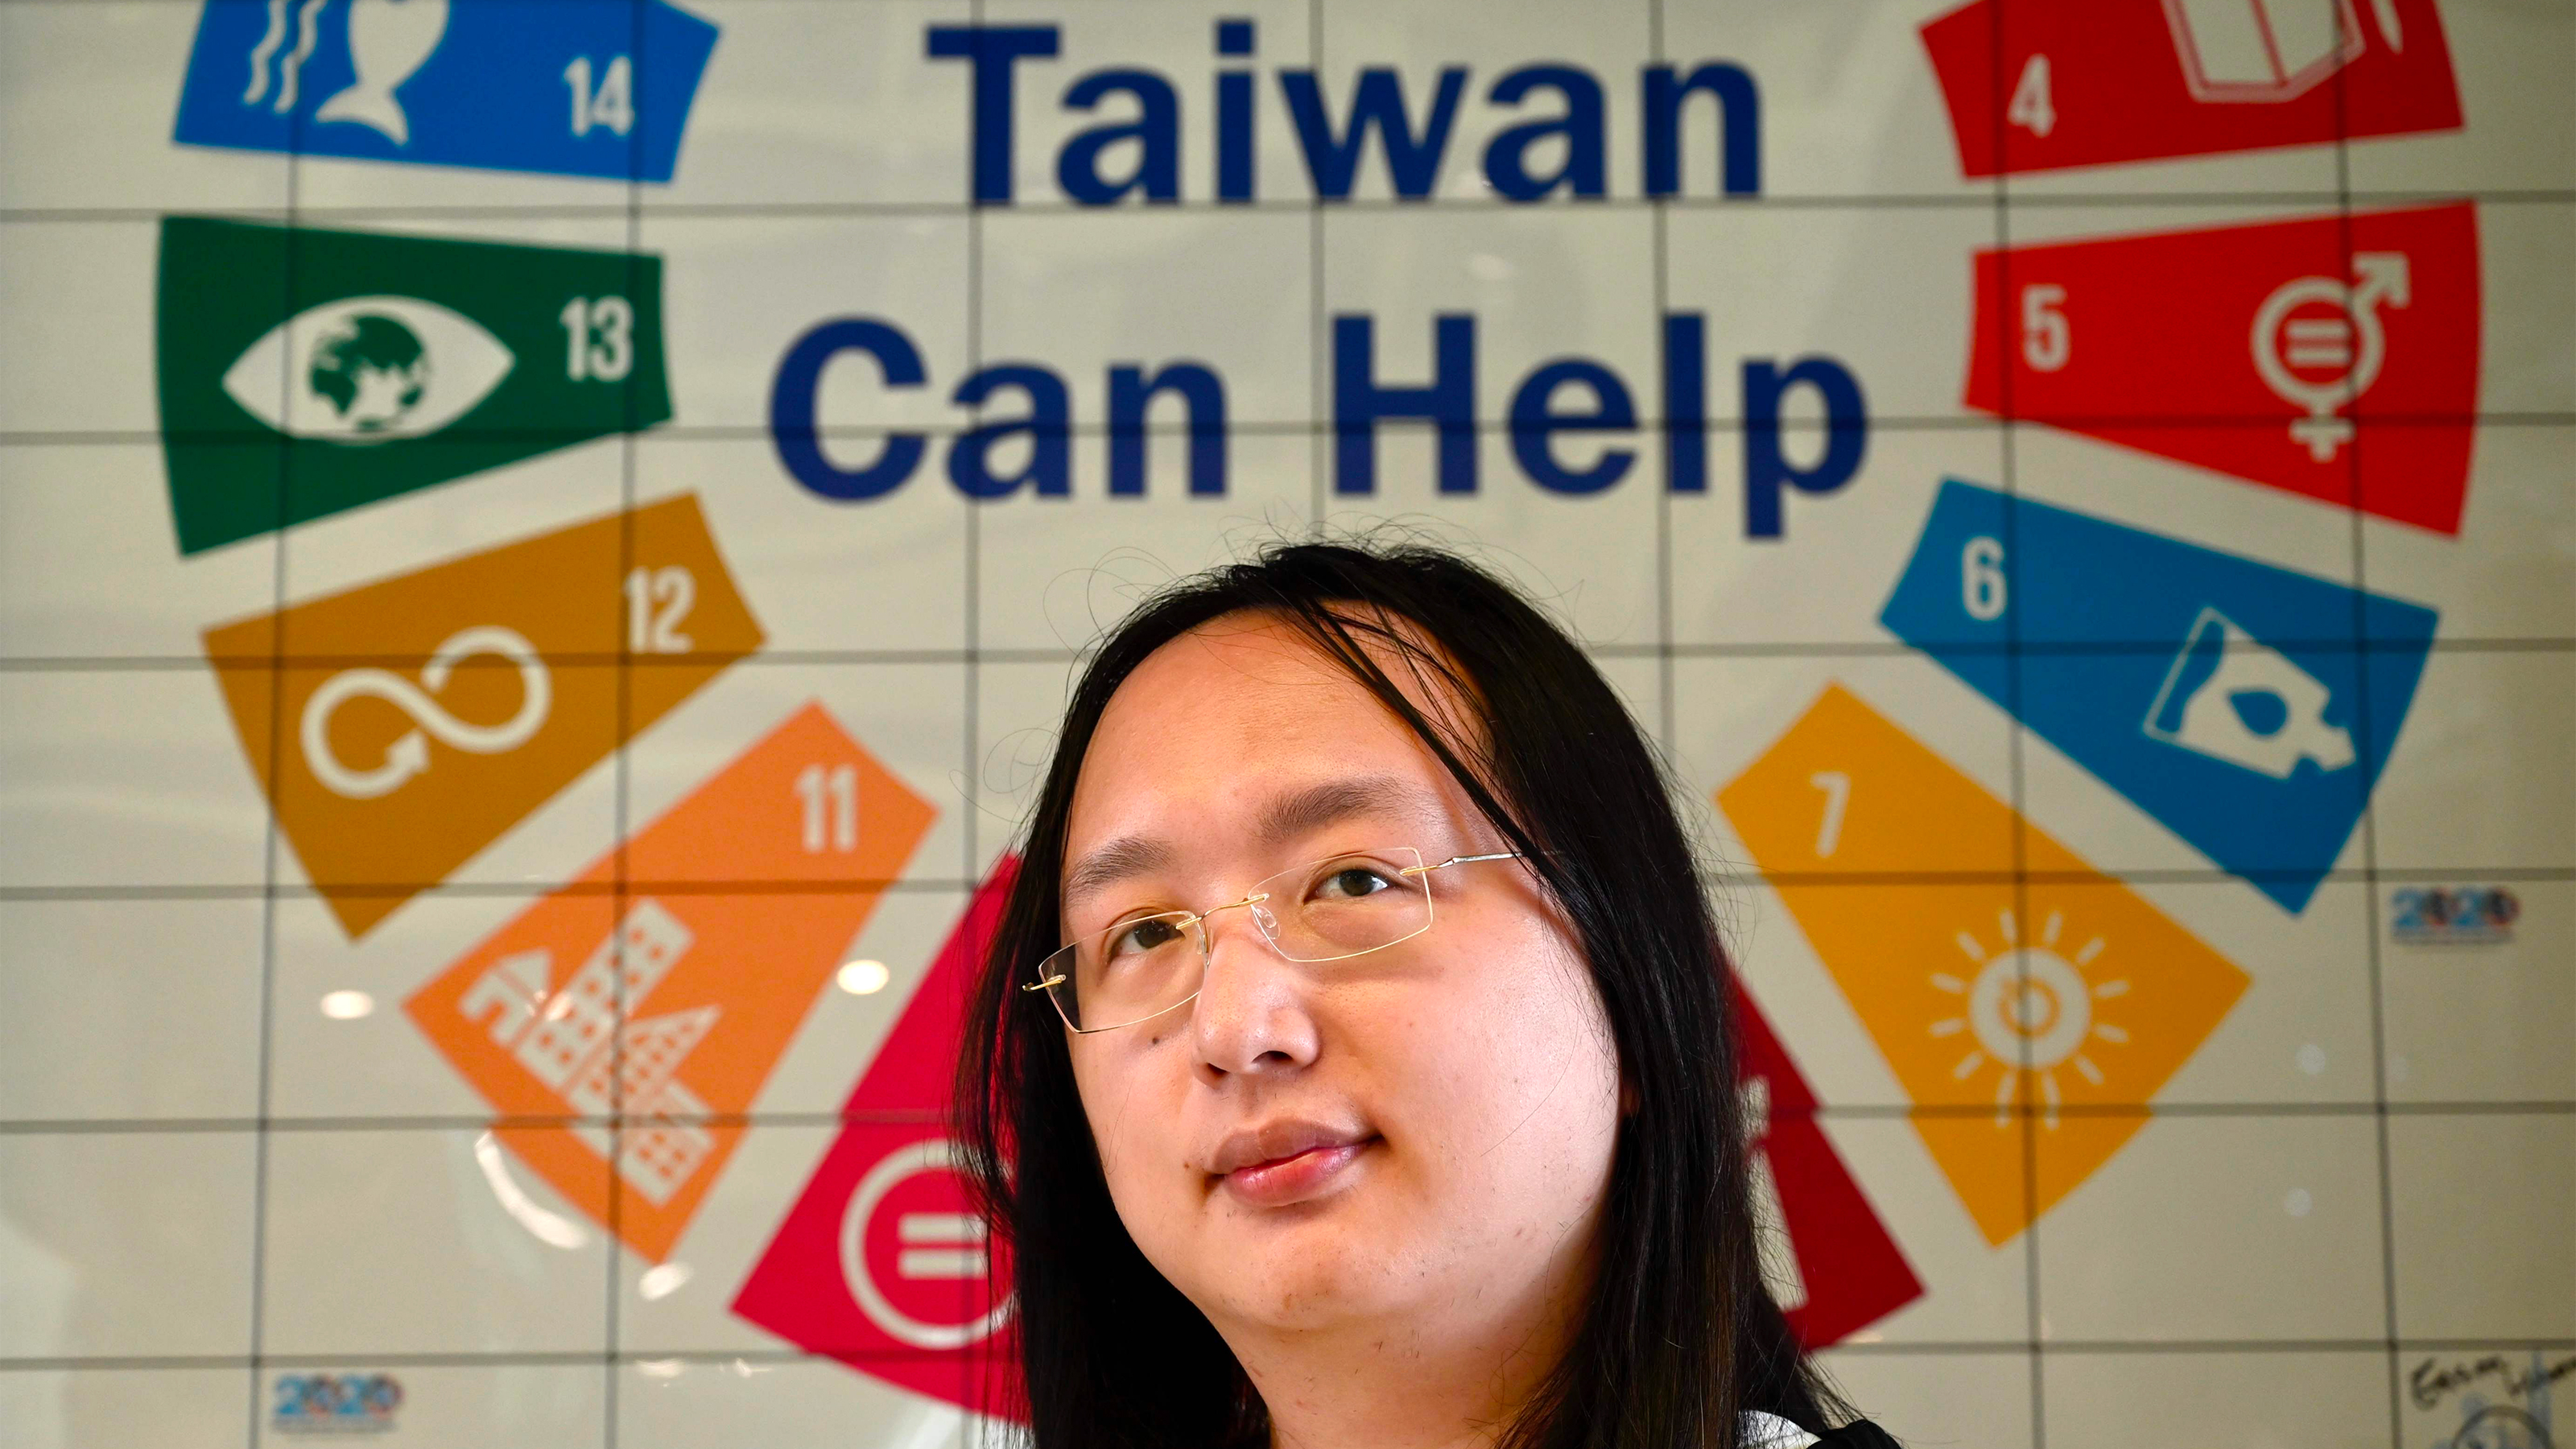 オードリー タン 台湾がアジアで初めて同性婚を認めた国となった理由 おせっかいでうるさい価値観だが President Online プレジデントオンライン